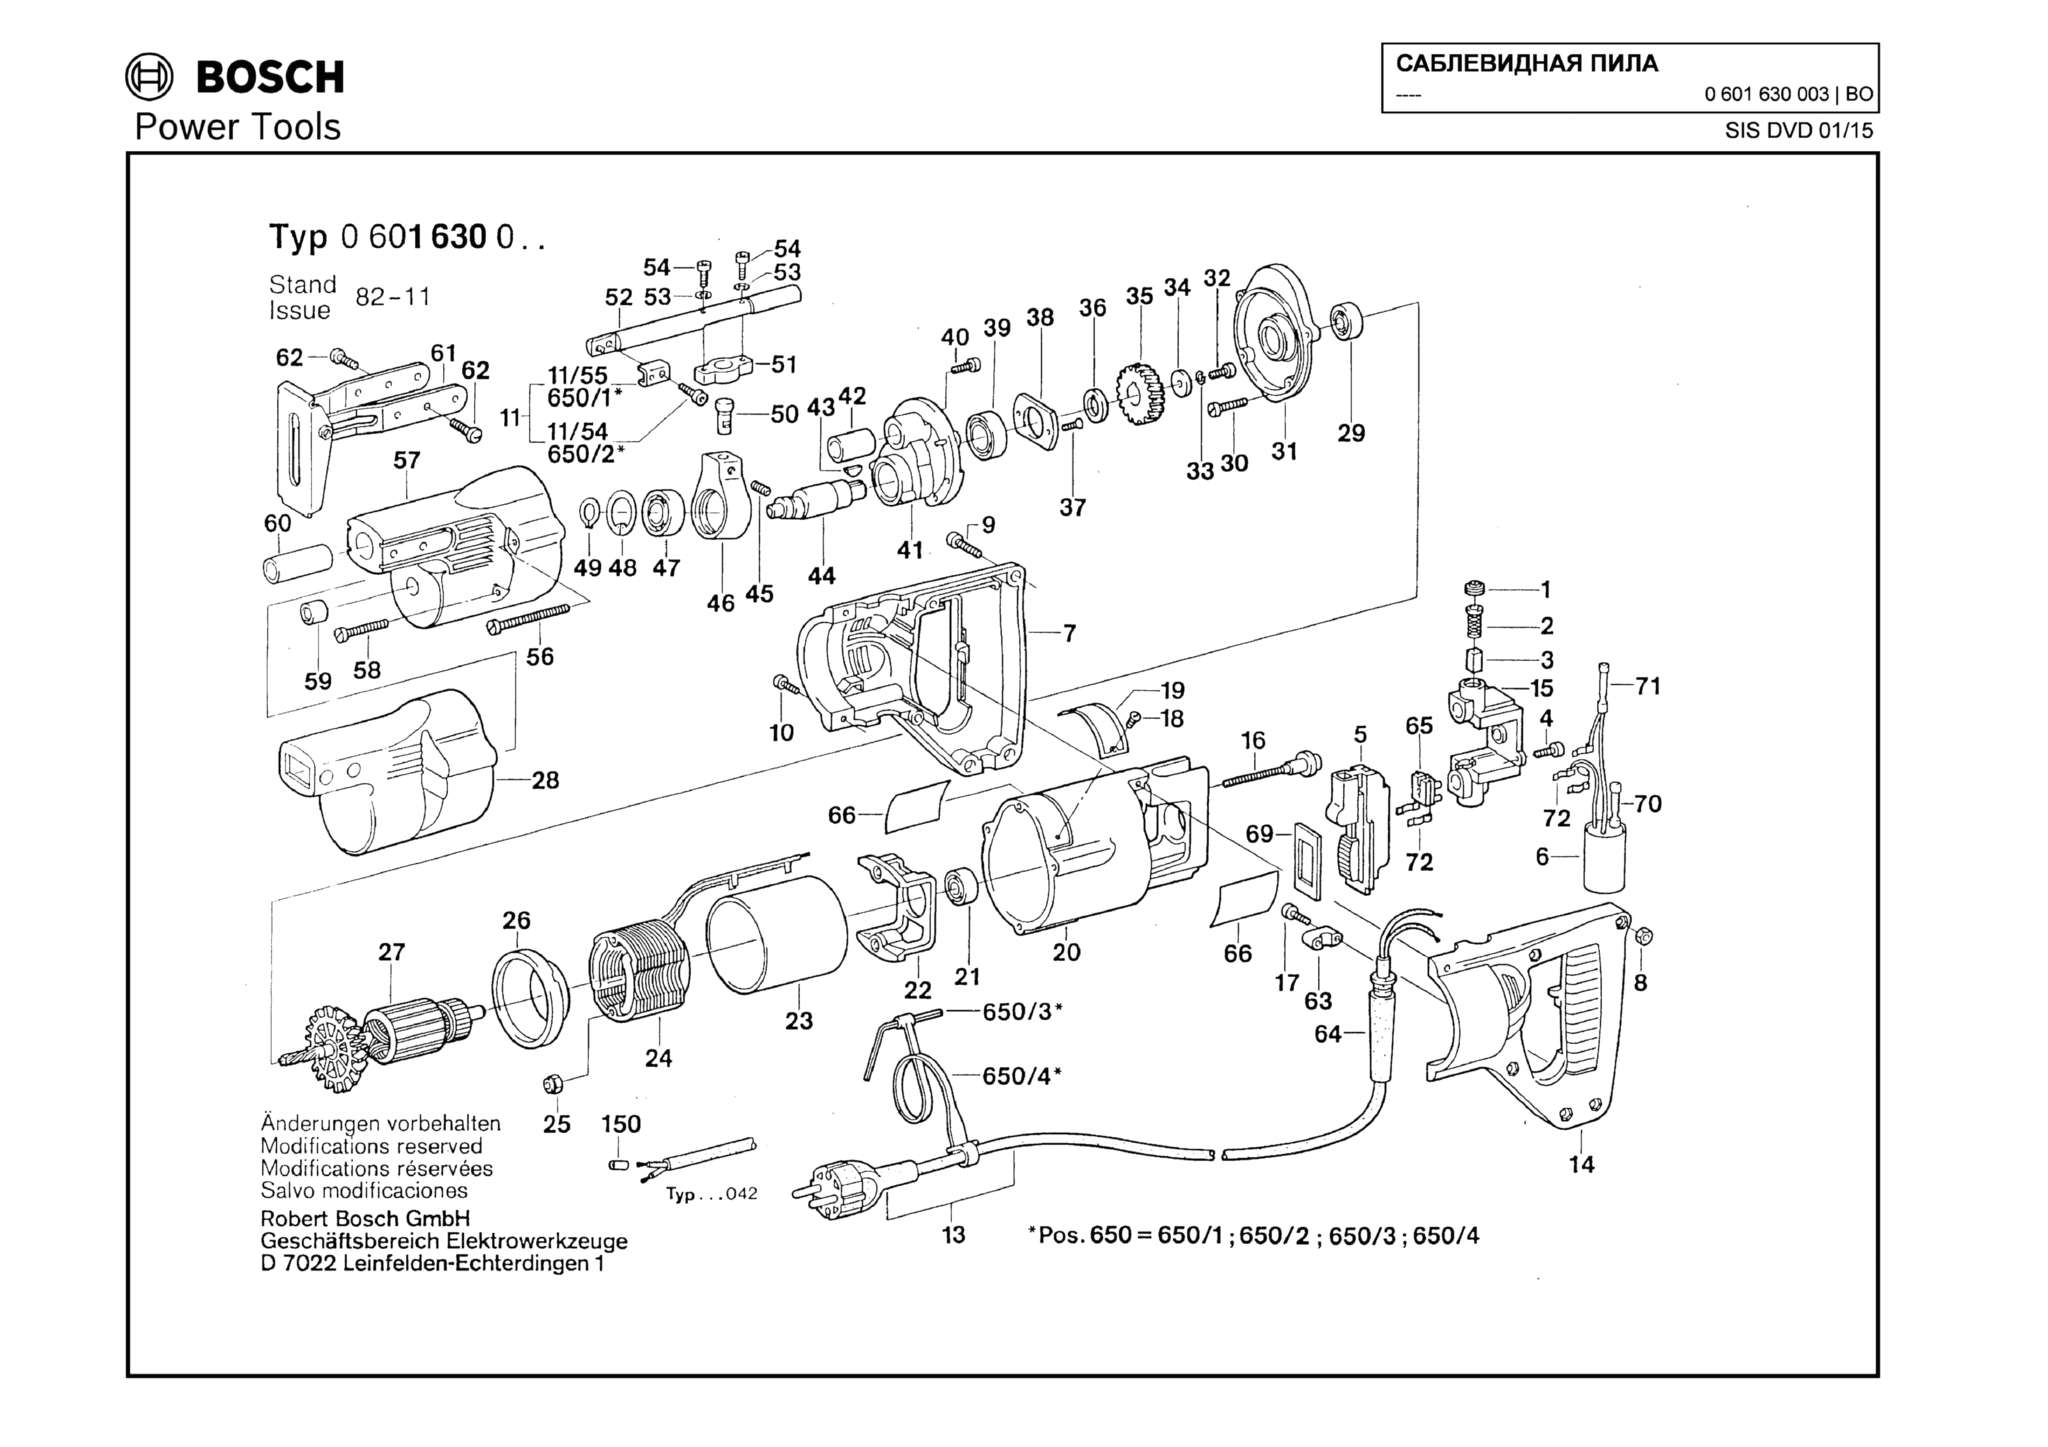 Запчасти, схема и деталировка Bosch (ТИП 0601630003)